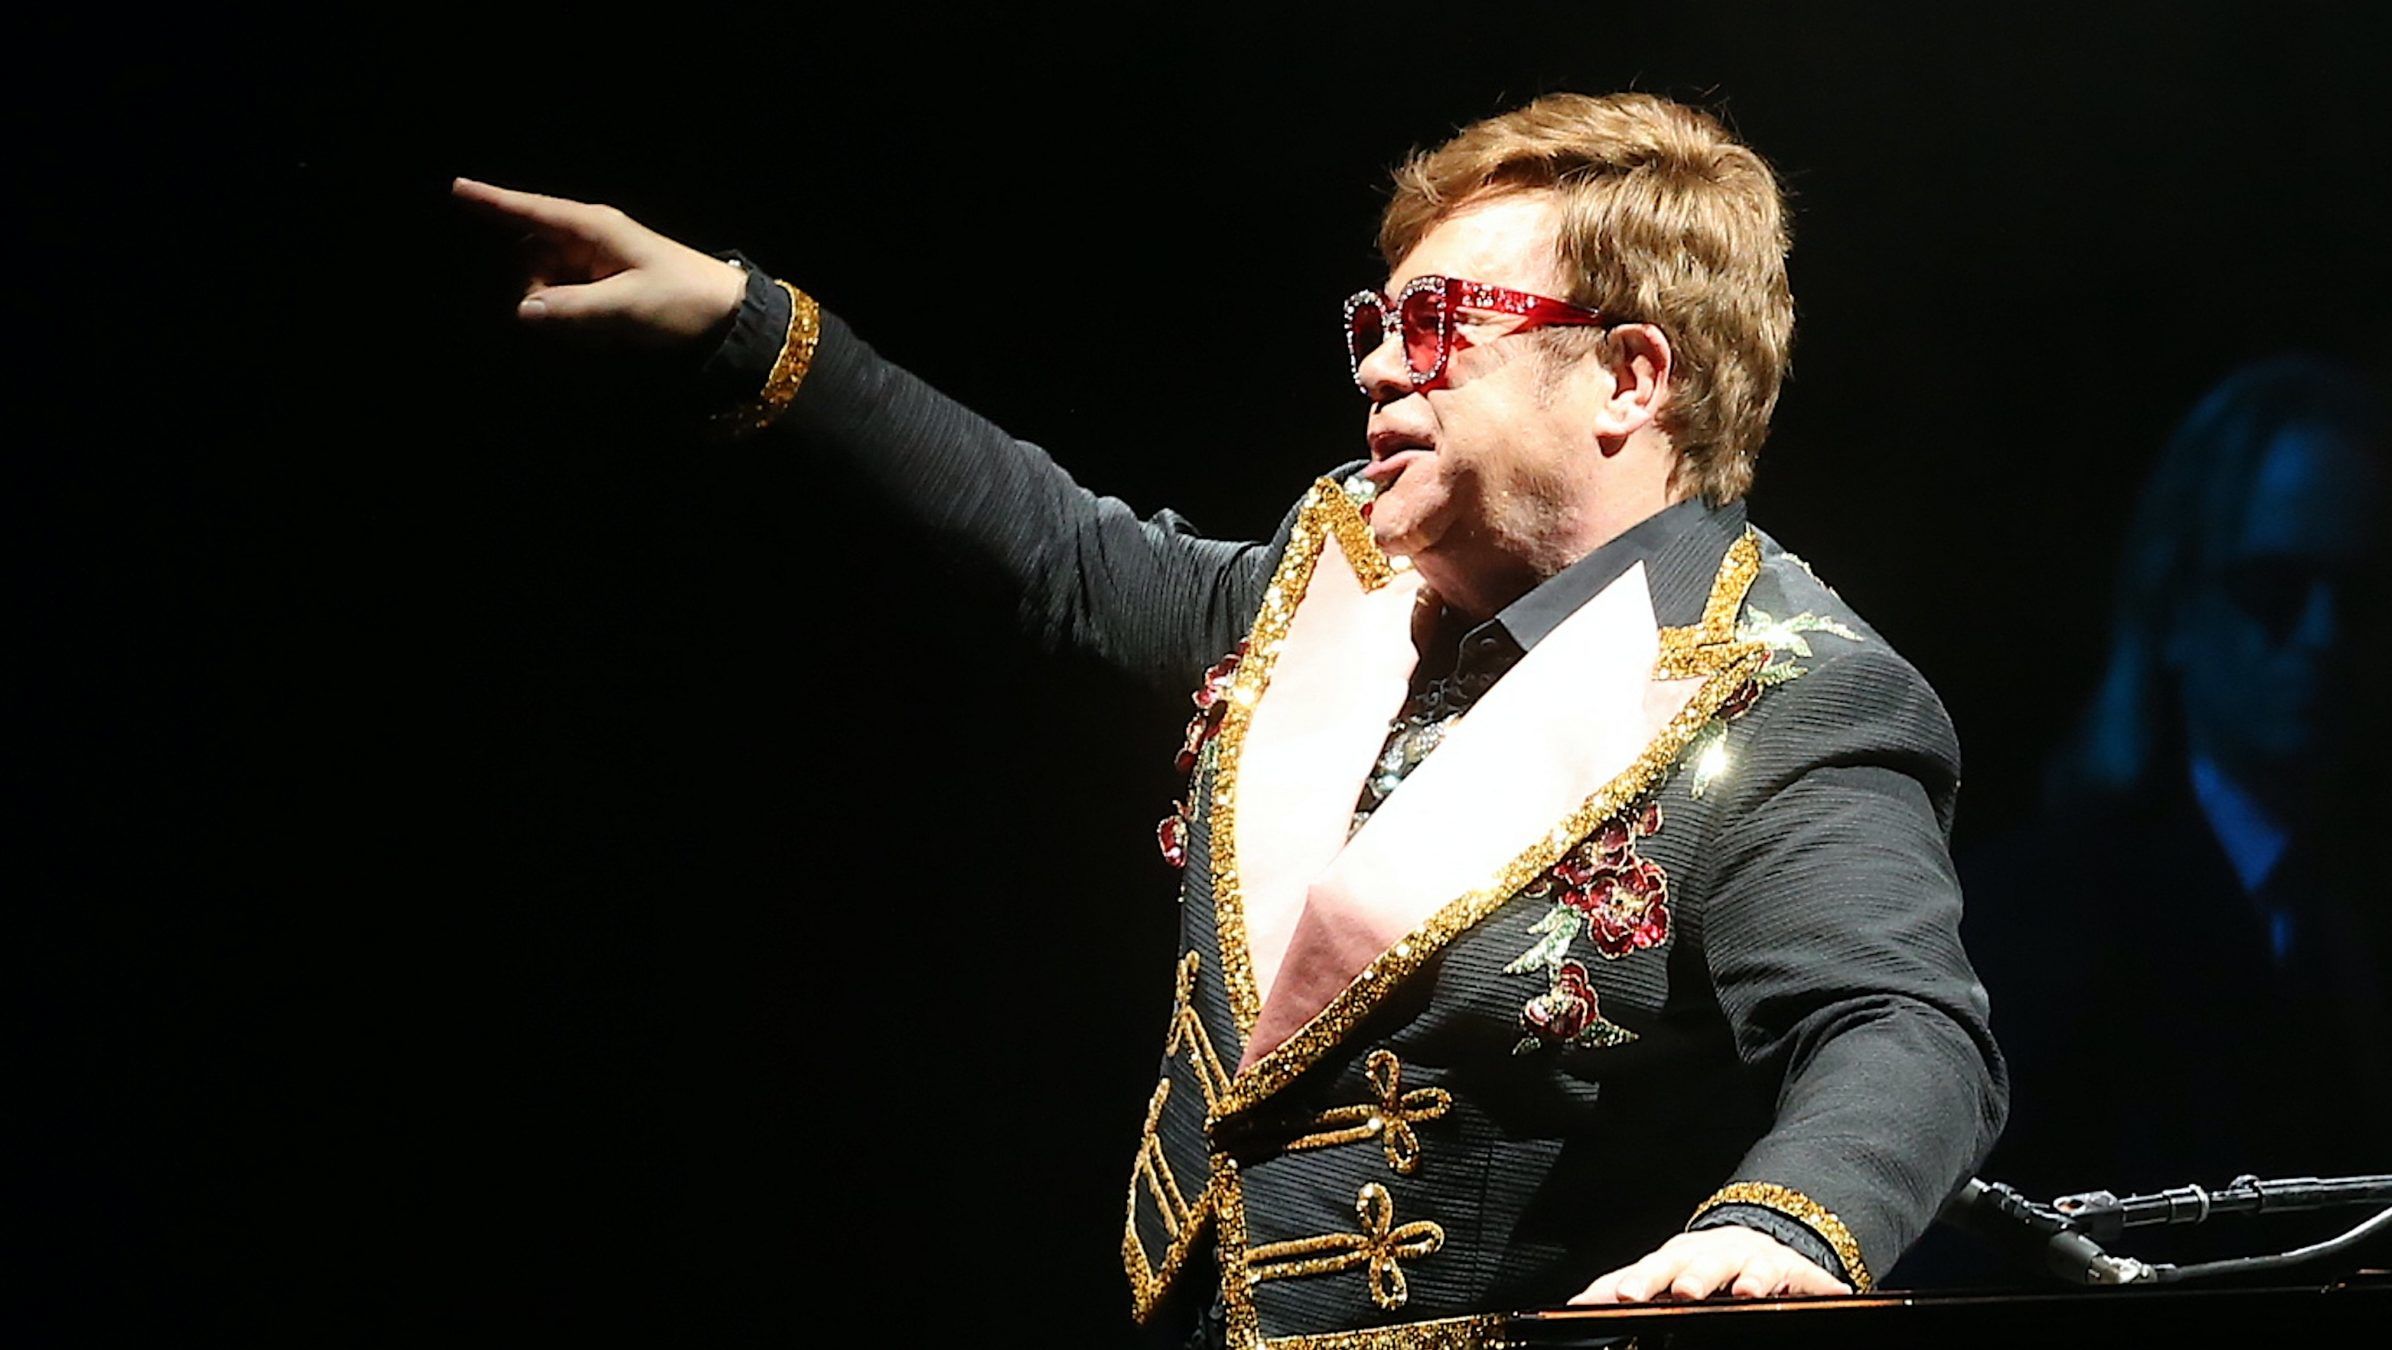 Elton John kihajította 1,5 milliós Gucci-táskáját a magángépéről